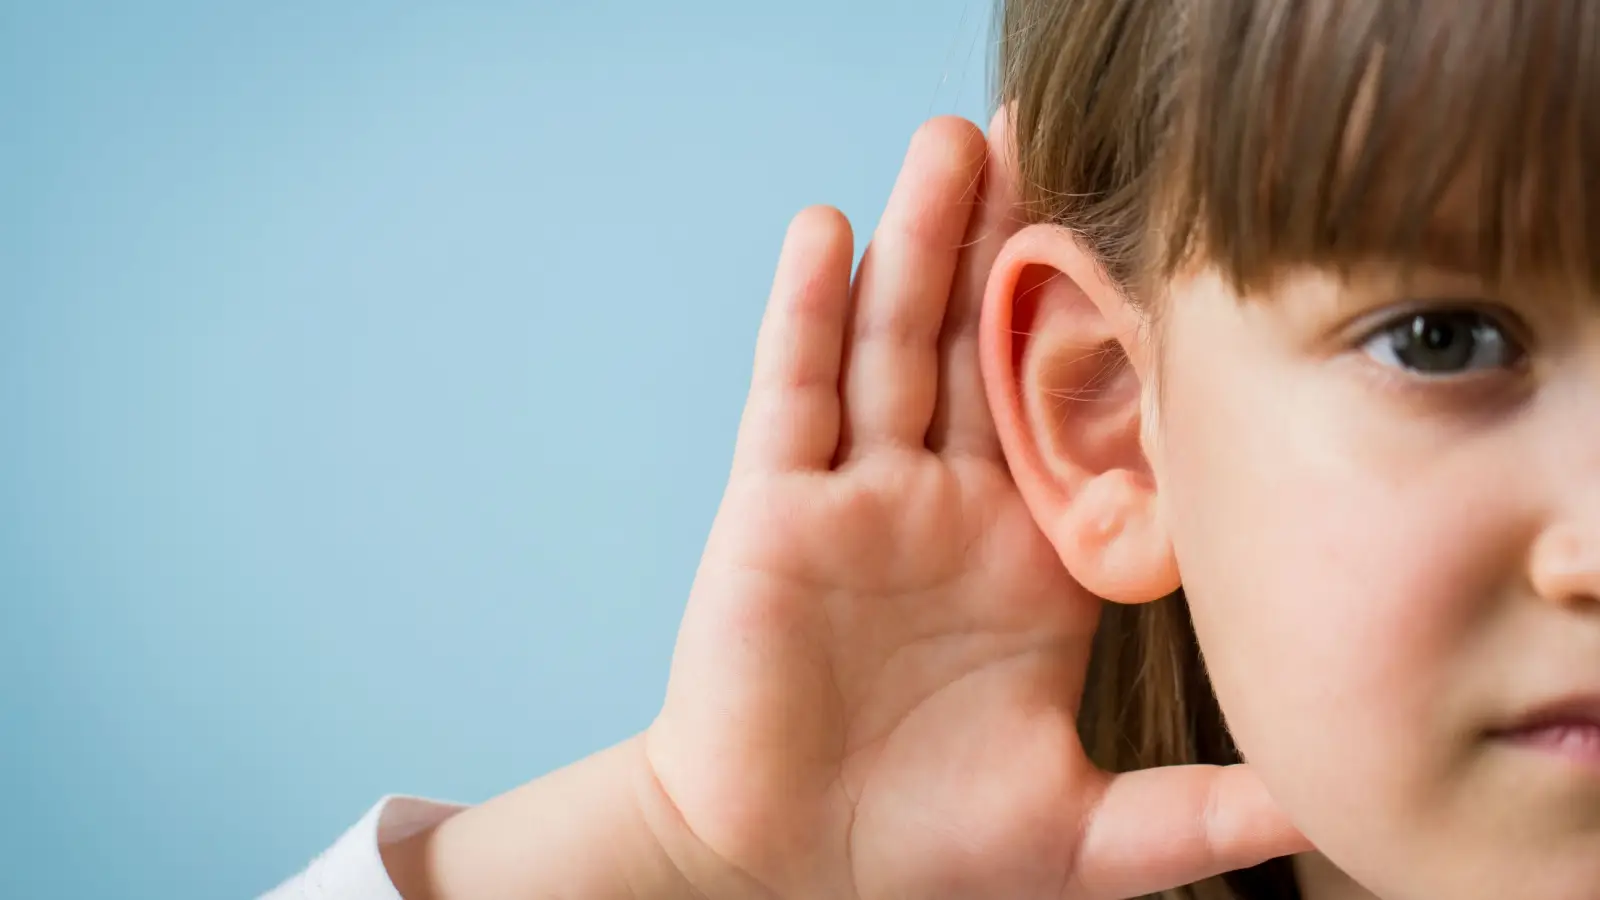 علاج ضعف السمع عند الاطفال